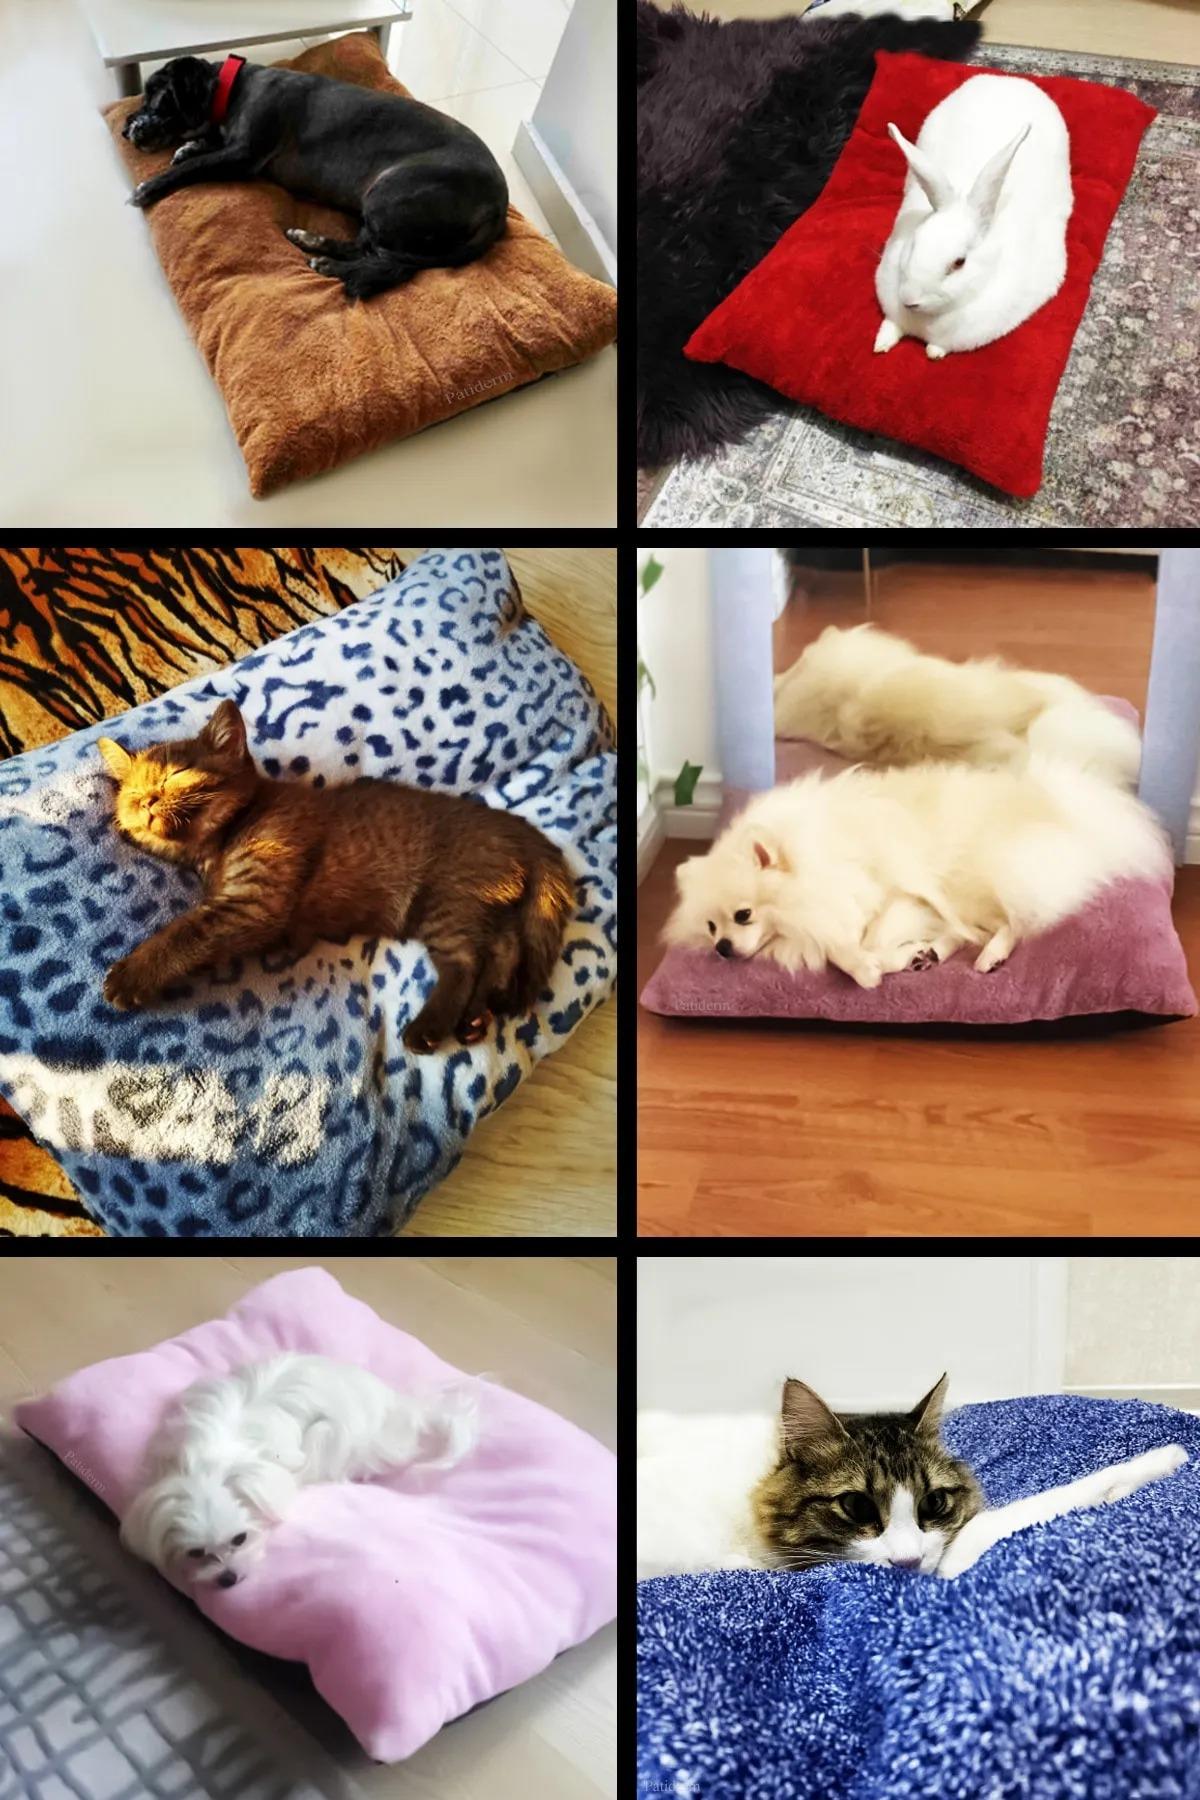 Patiderm Peluş Kedi ve Köpek Yatağı Yer Minderi - Karışık Renk